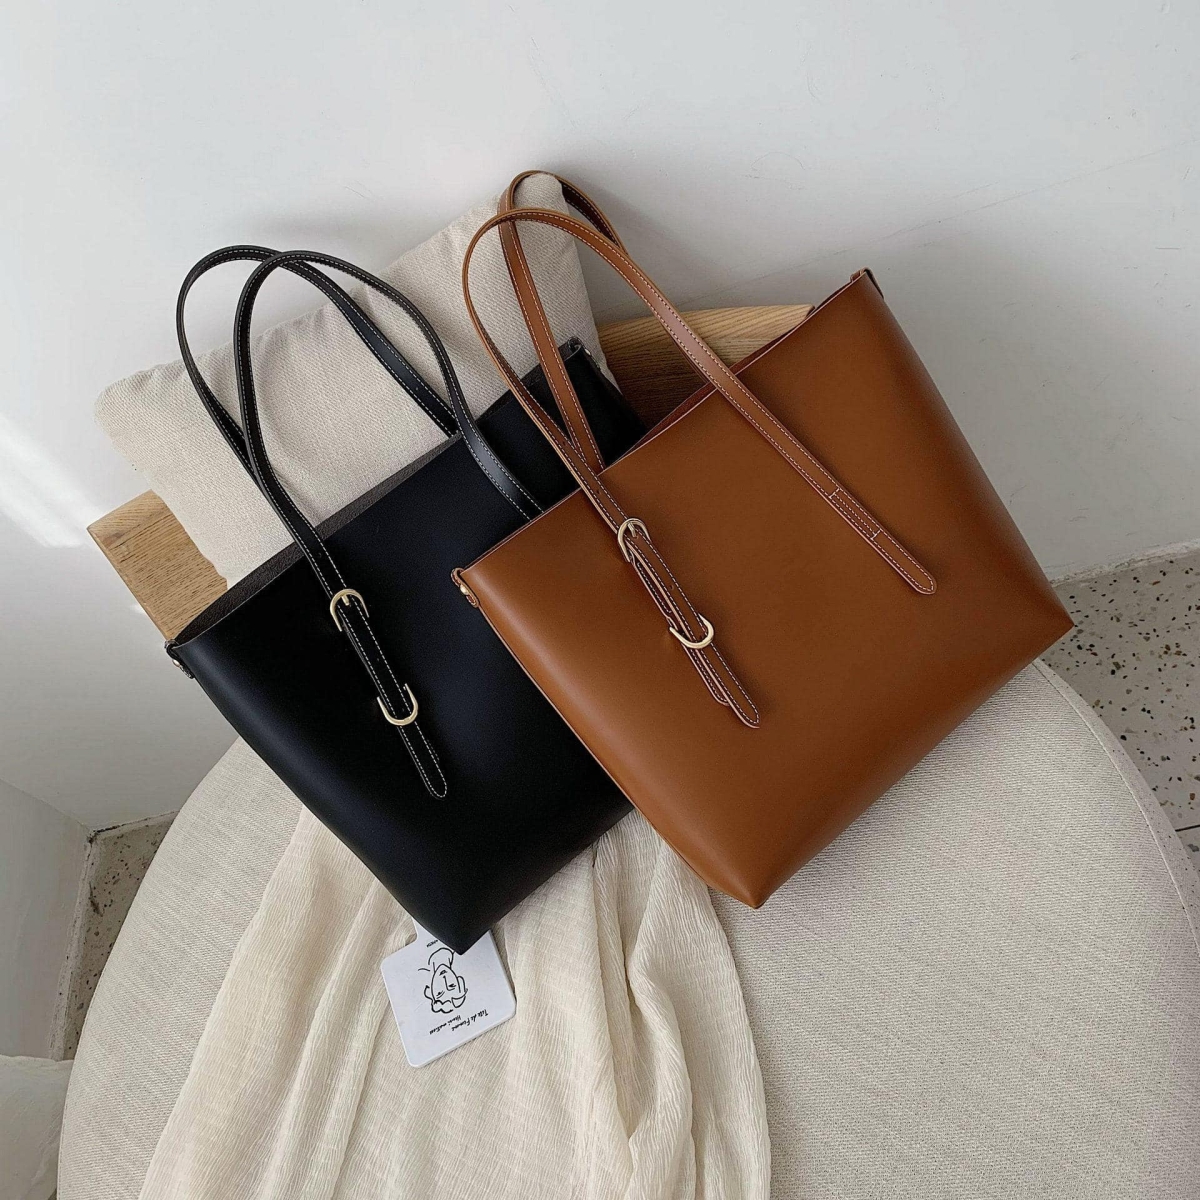 Women Leather Bags Handbags Large Shoulder De